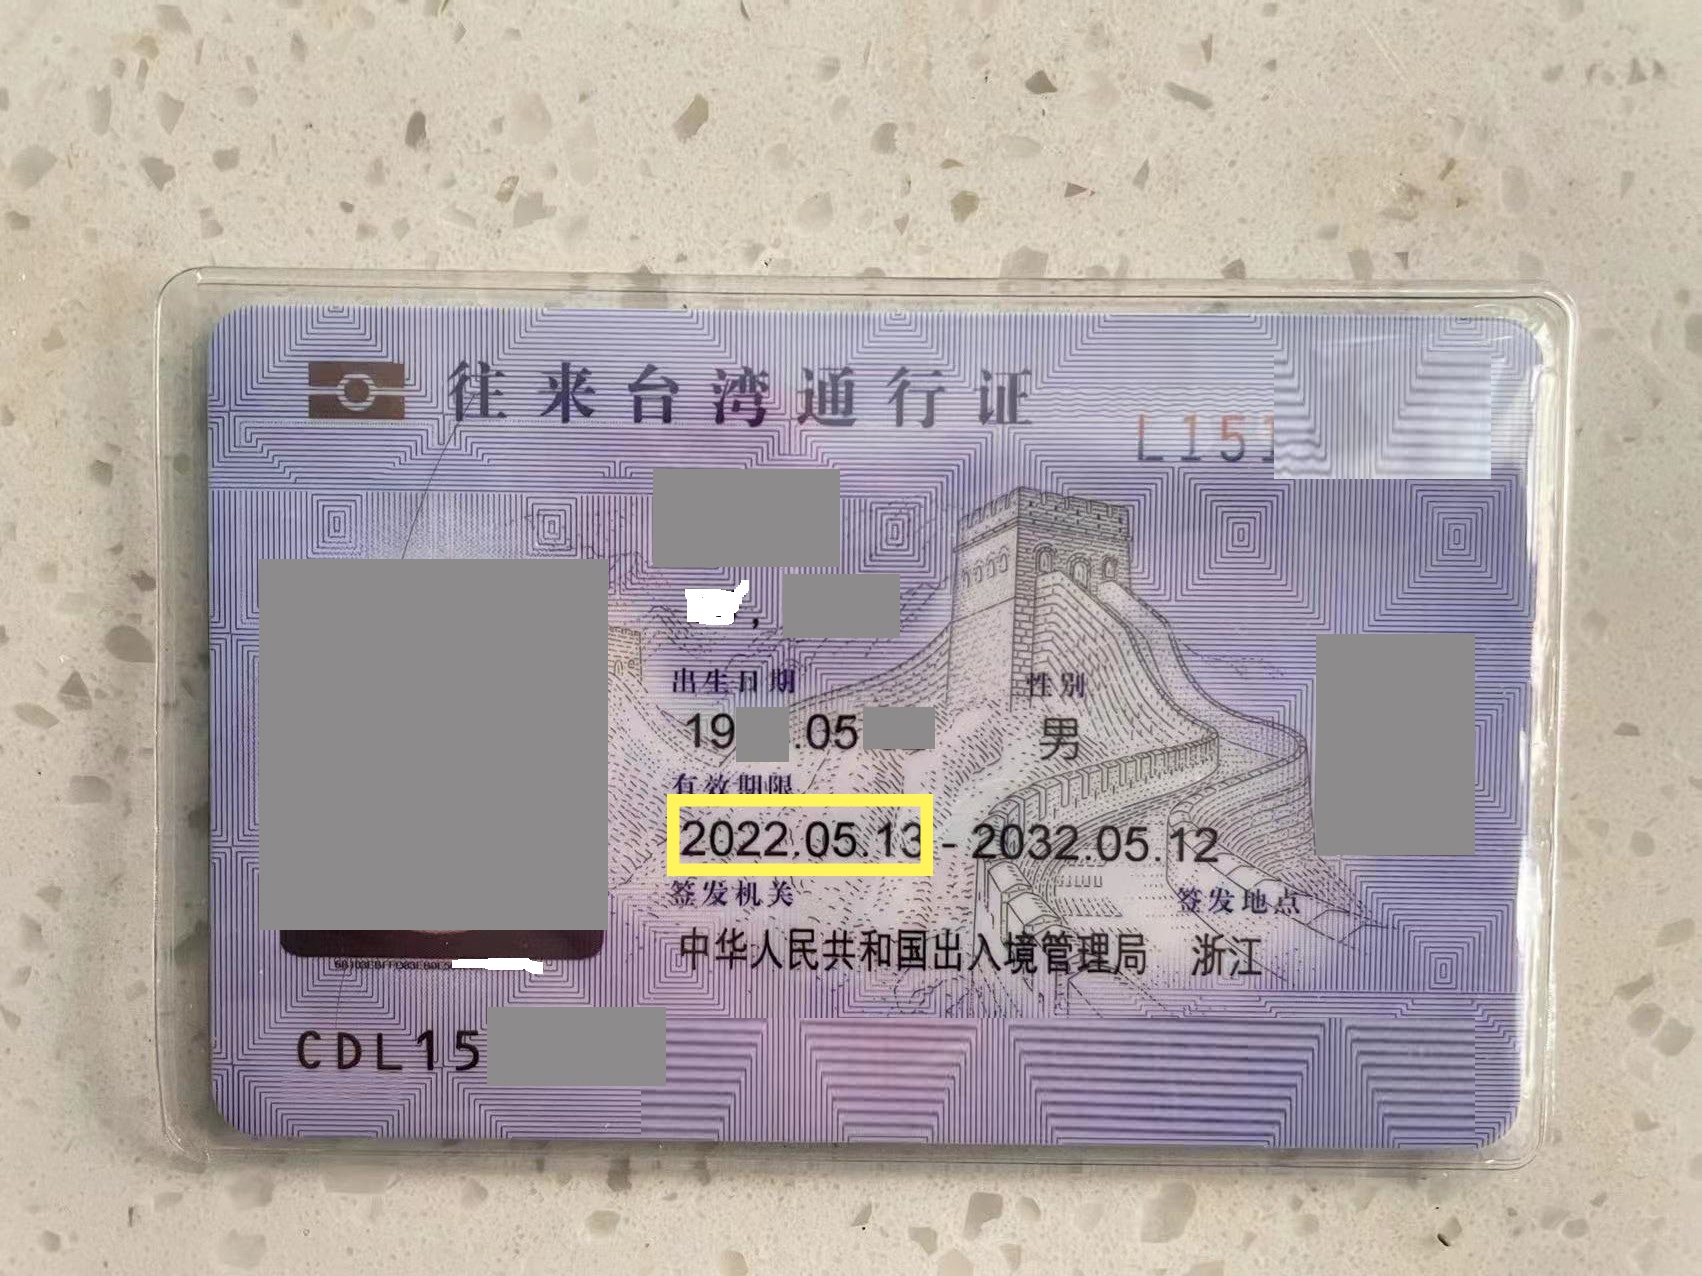 大陆居民台湾台湾通行证卡片